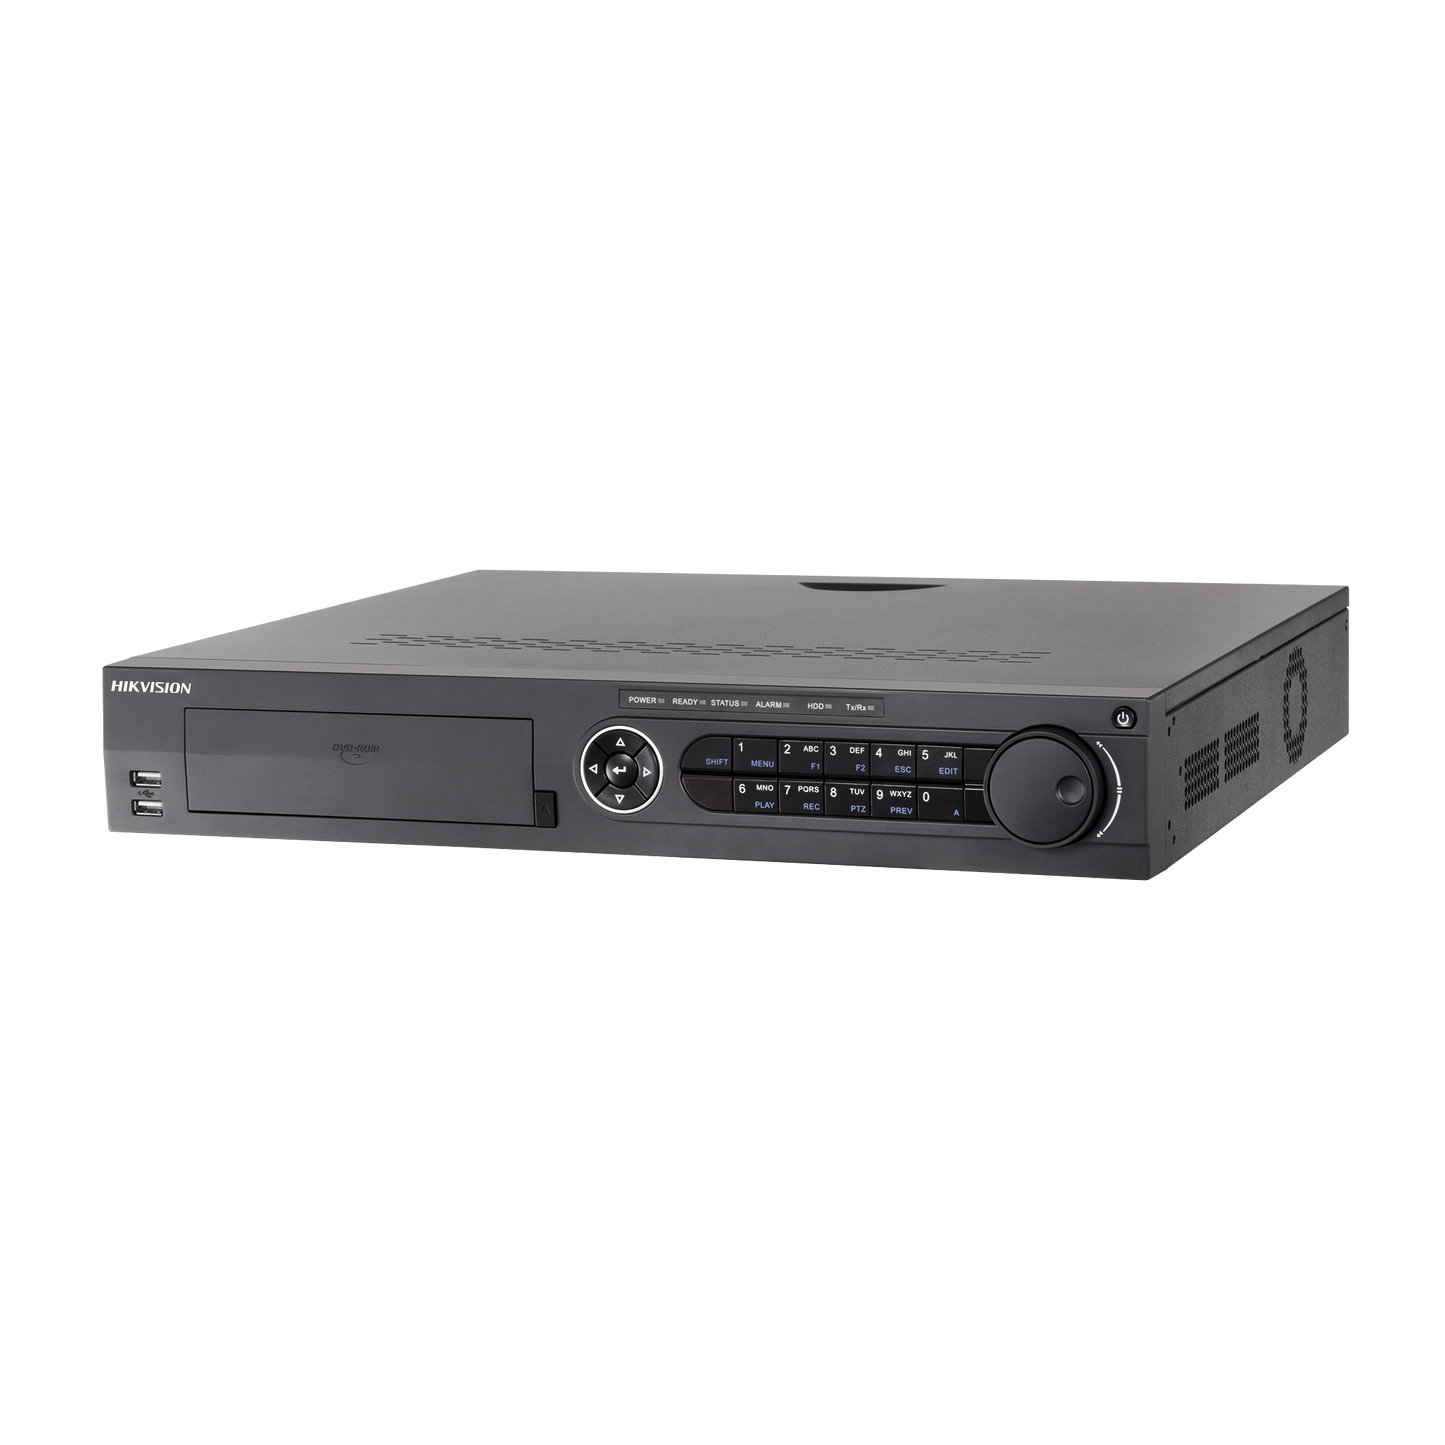 DVR 16 Canales TurboHD + 4 Canales IP / 4 Megapixel / 4 Bahías de Disco Duro / 4 Canales de Audio / Videoanalisis / 16 Entradas de Alarma